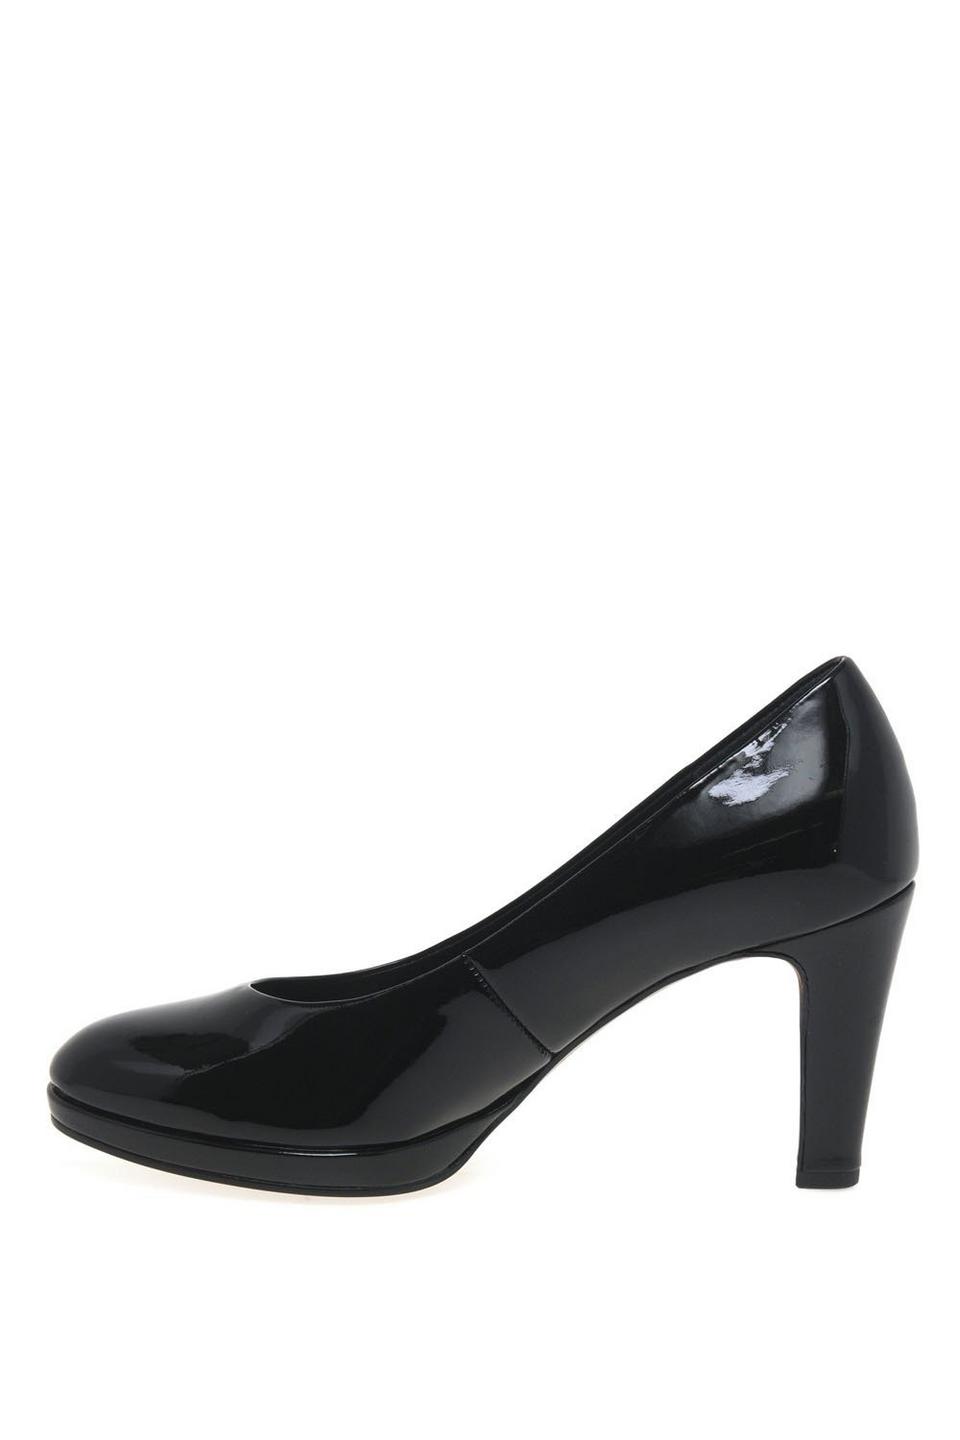 Heels | 'Splendid' High Heel Court Shoes | Gabor